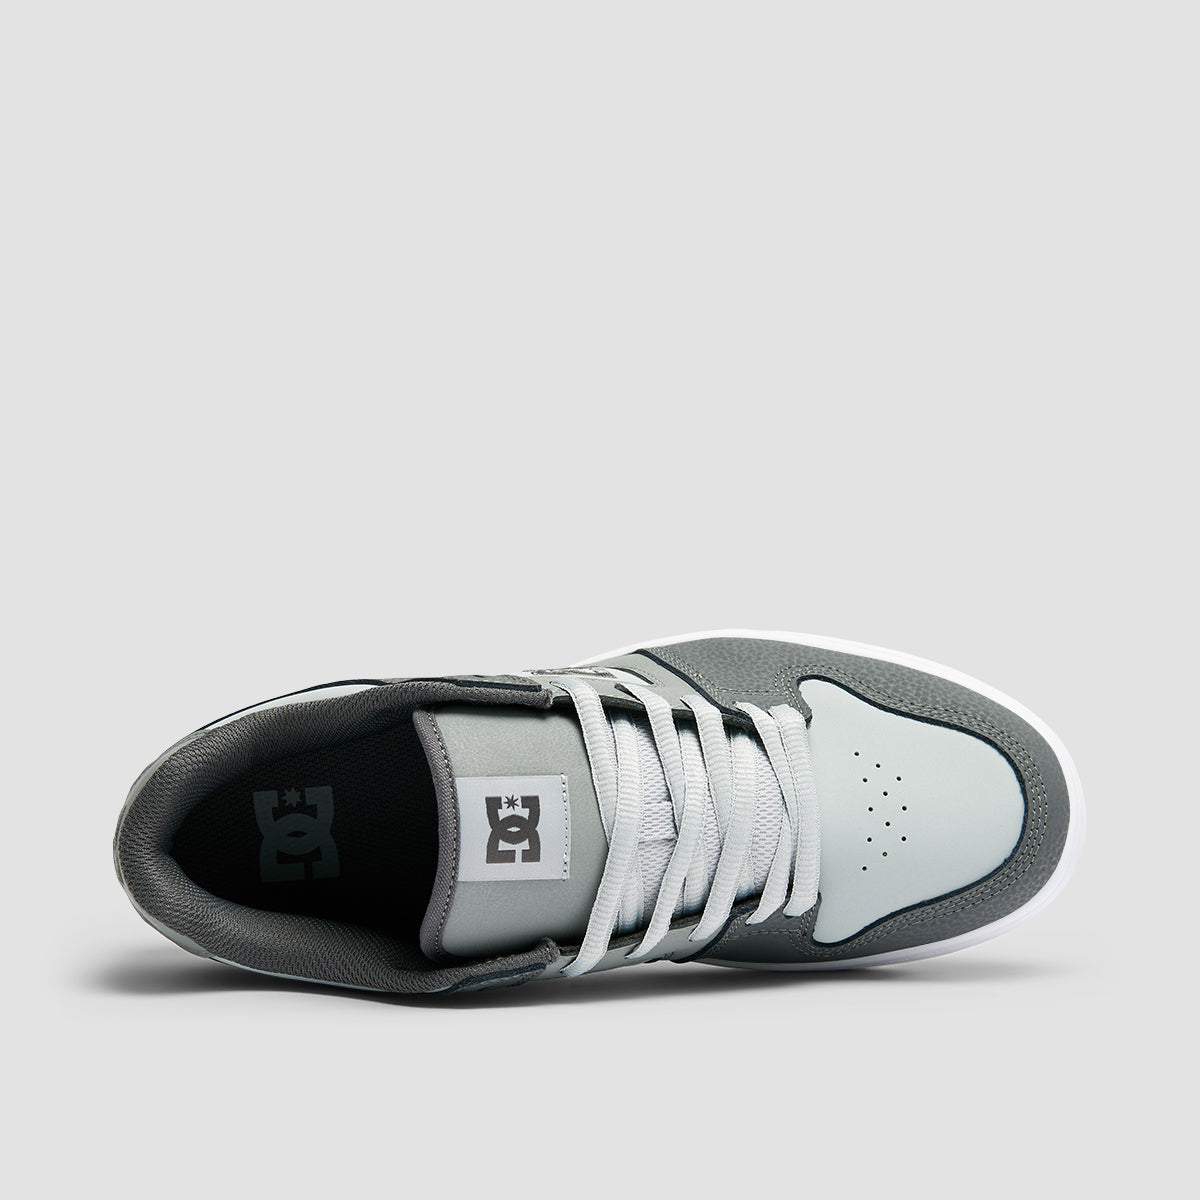 DC Manteca 4 Shoes - Grey/Gum